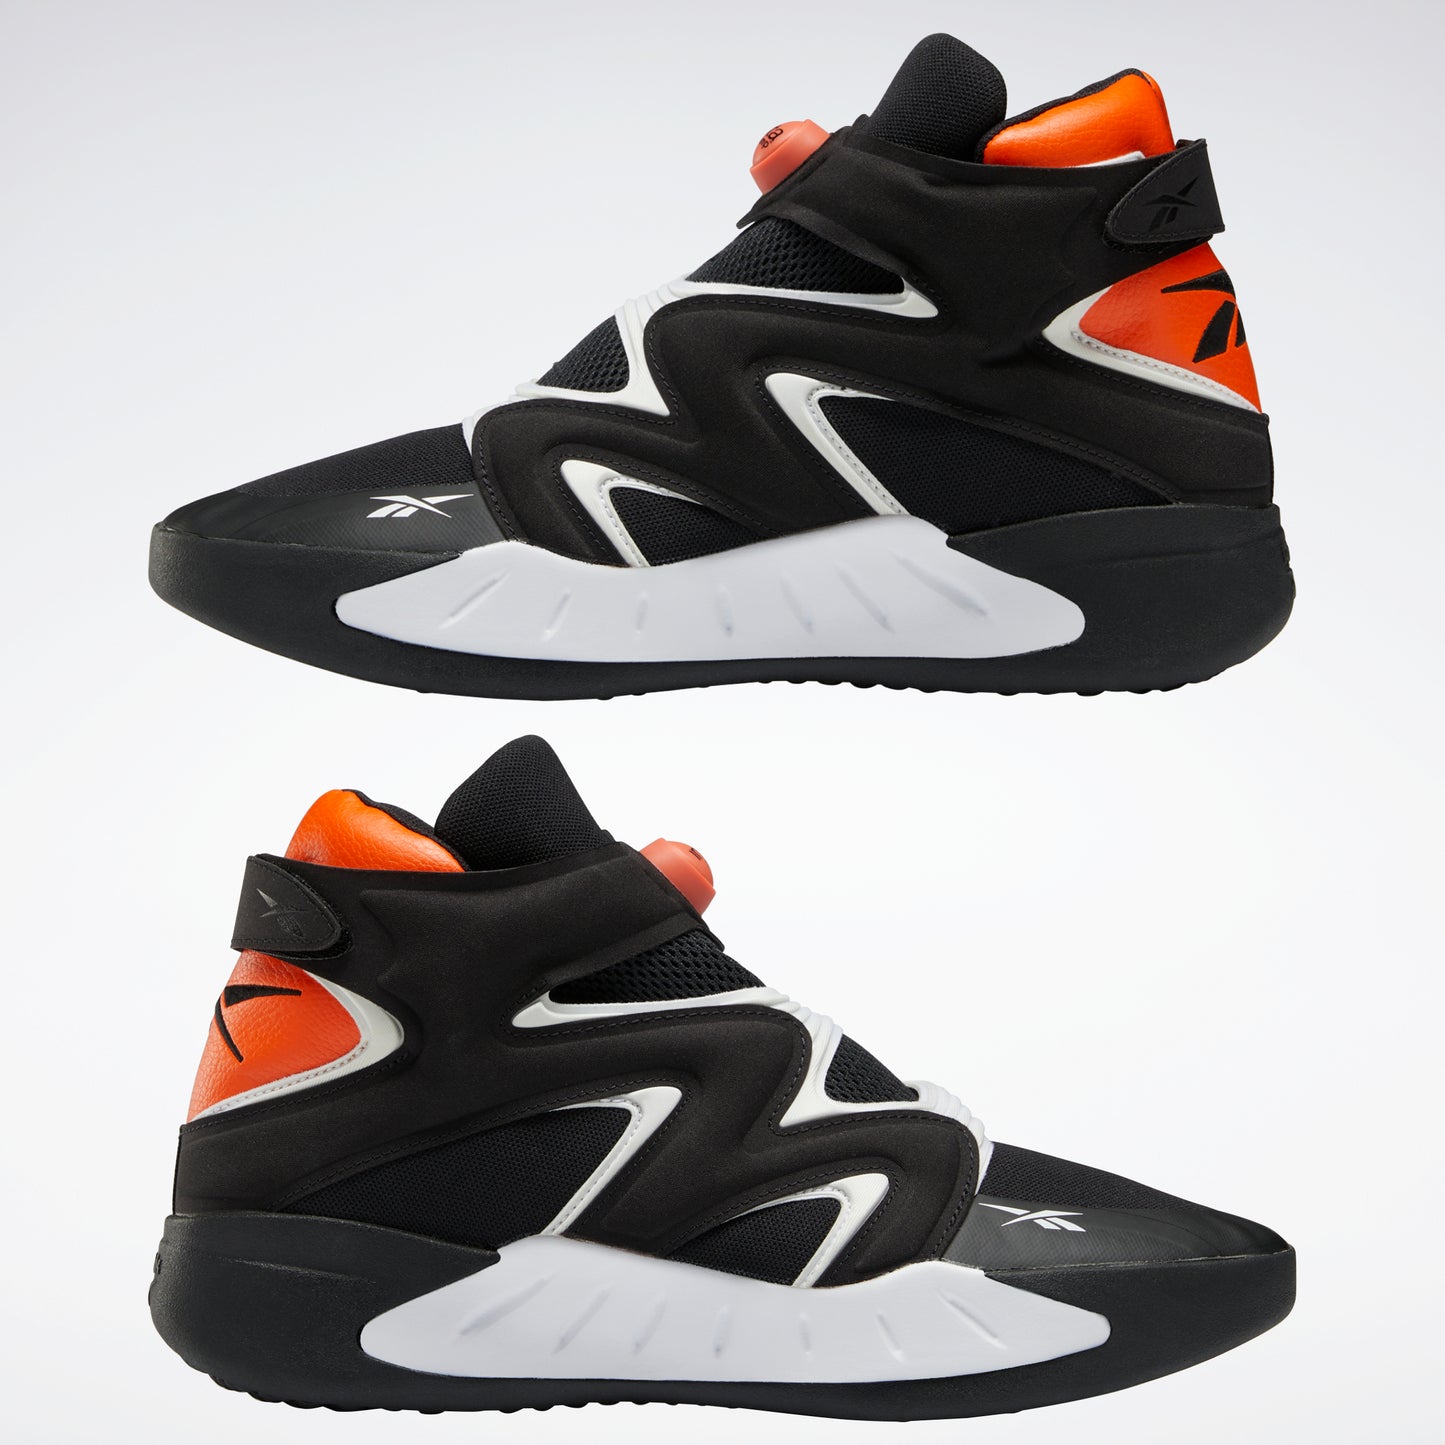 Reebok Footwear Men Instapump Fury Zone Shoes Black/Ftwwht/Black